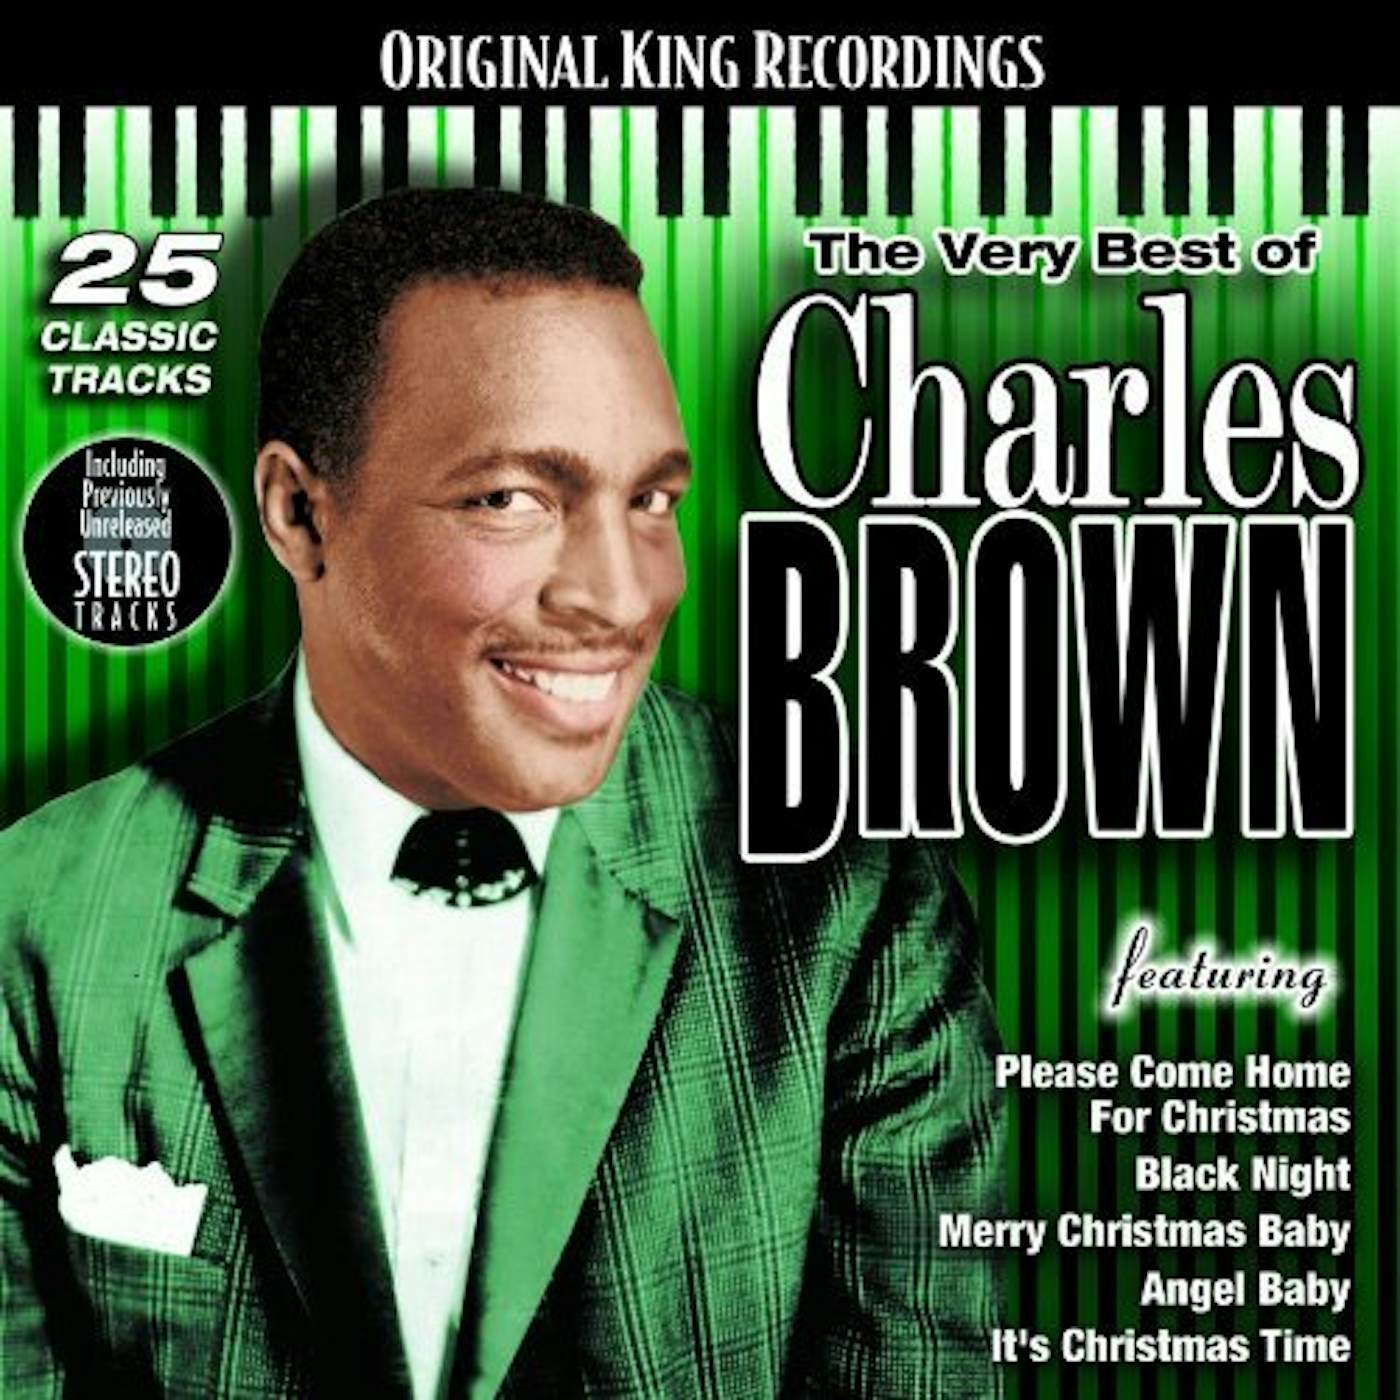 Charles Brown VERY BEST OF CD